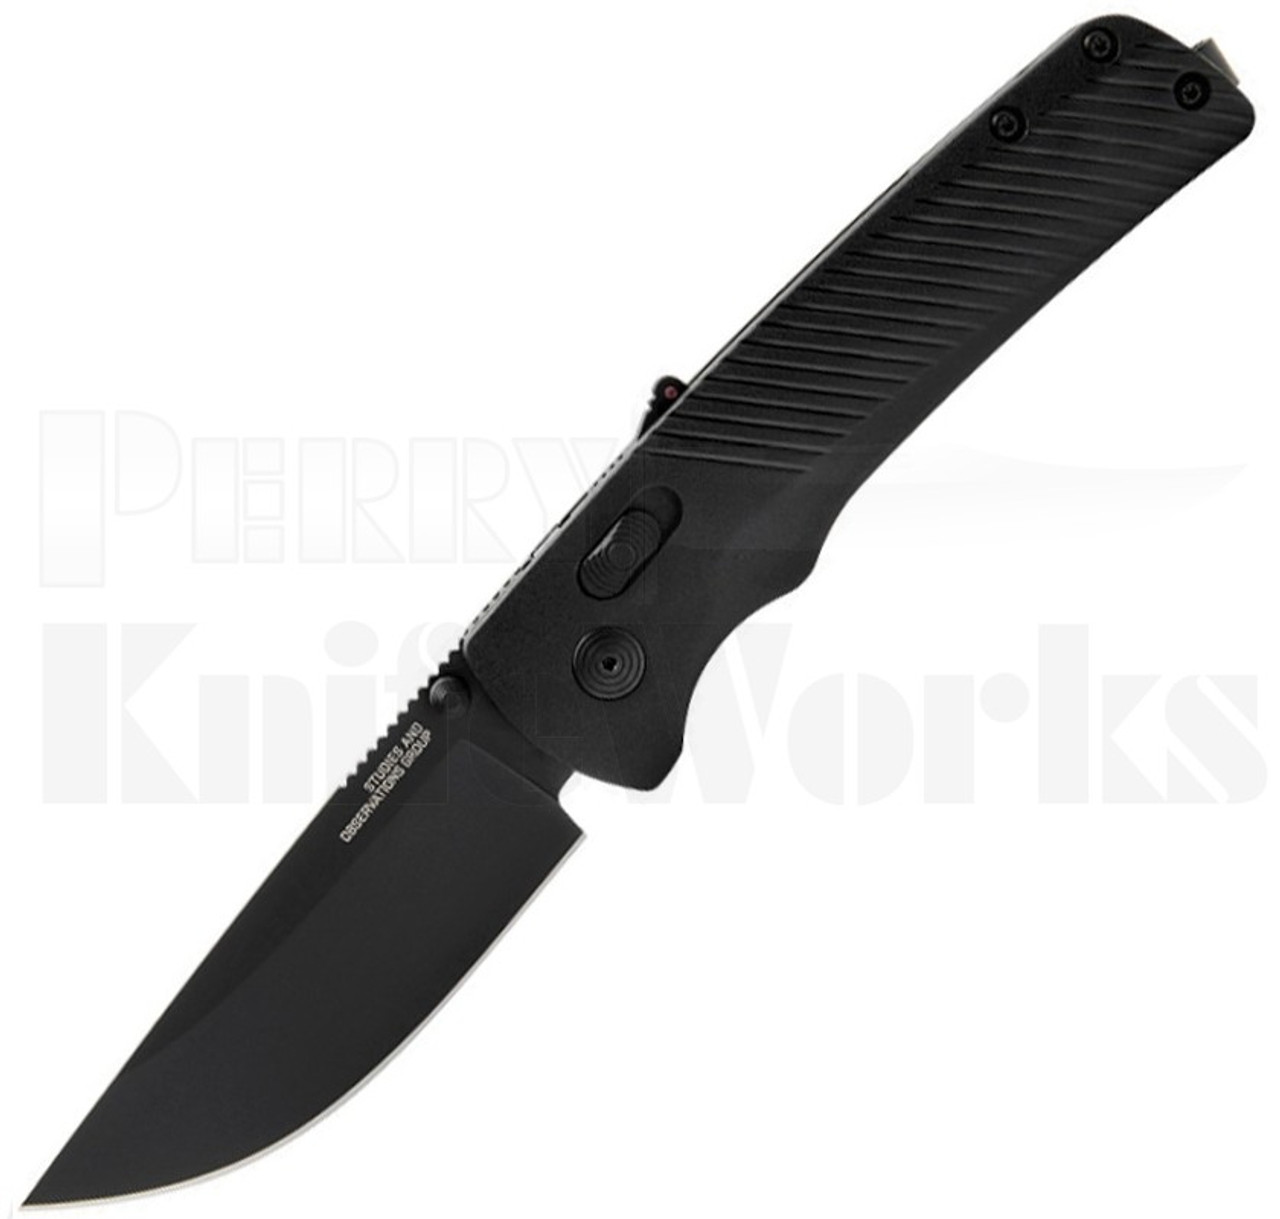 SOG Flash AT-XR Lock Knife Blackout GRN l 3.45" Black Blade l For Sale